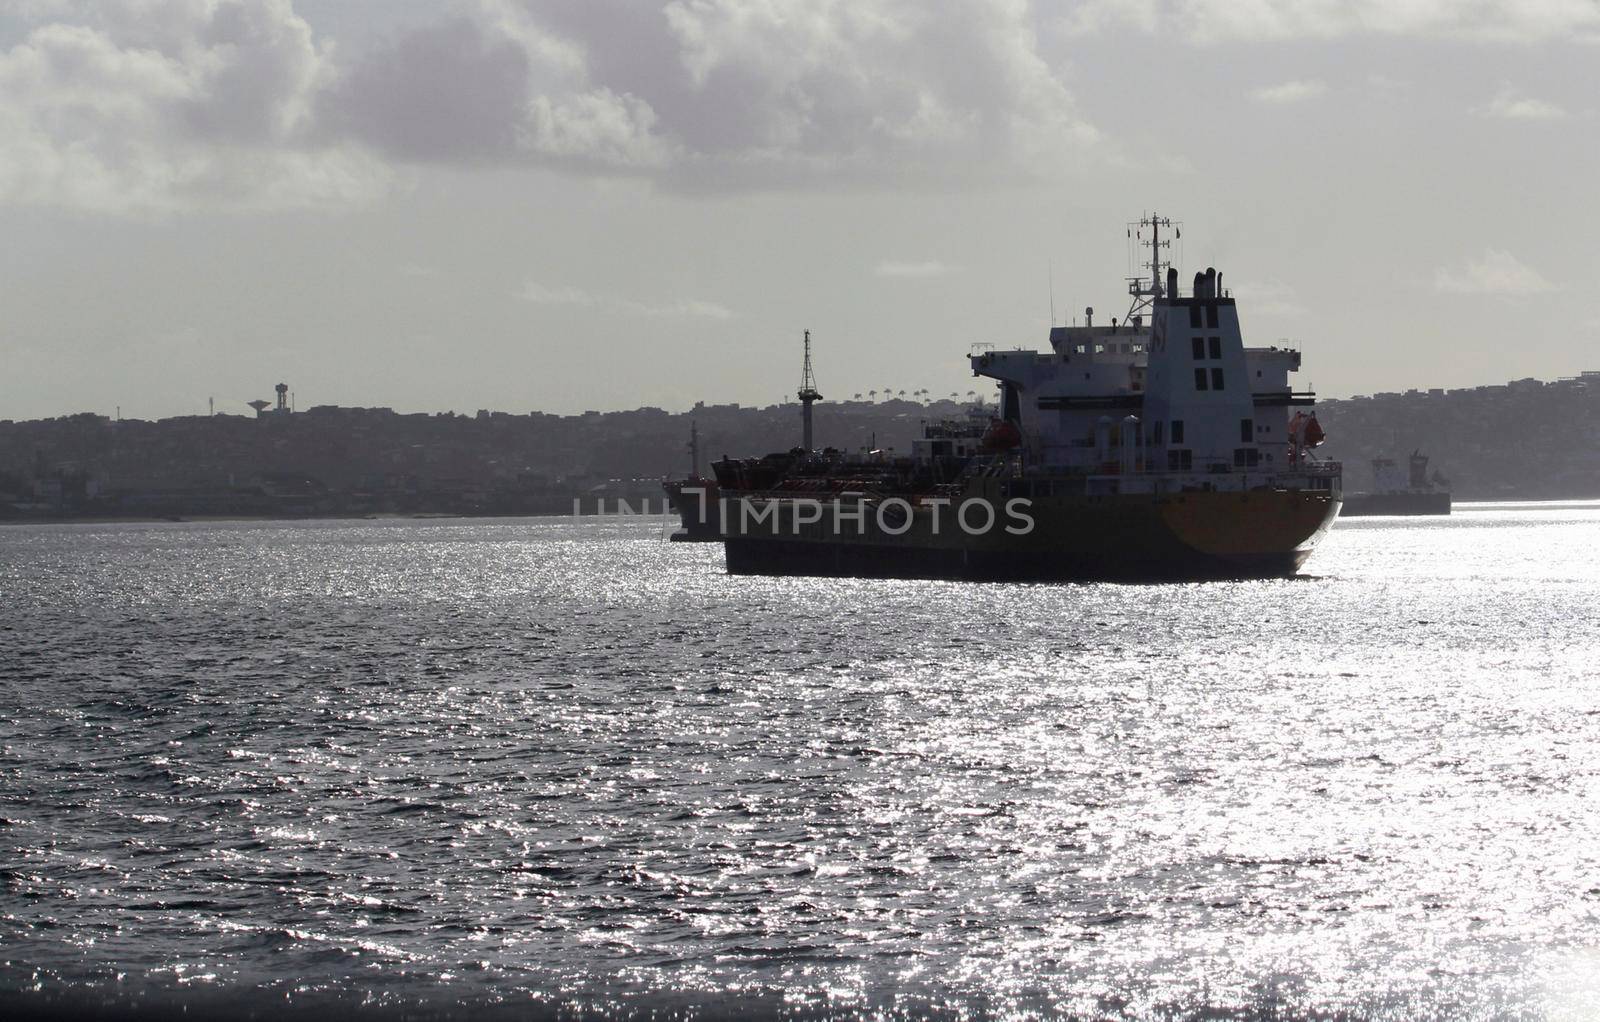 salvador, bahia, brazil - august 18, 2012: ship is seen anchored in waters of Baia de Todos os Santos in the city of Salvador.